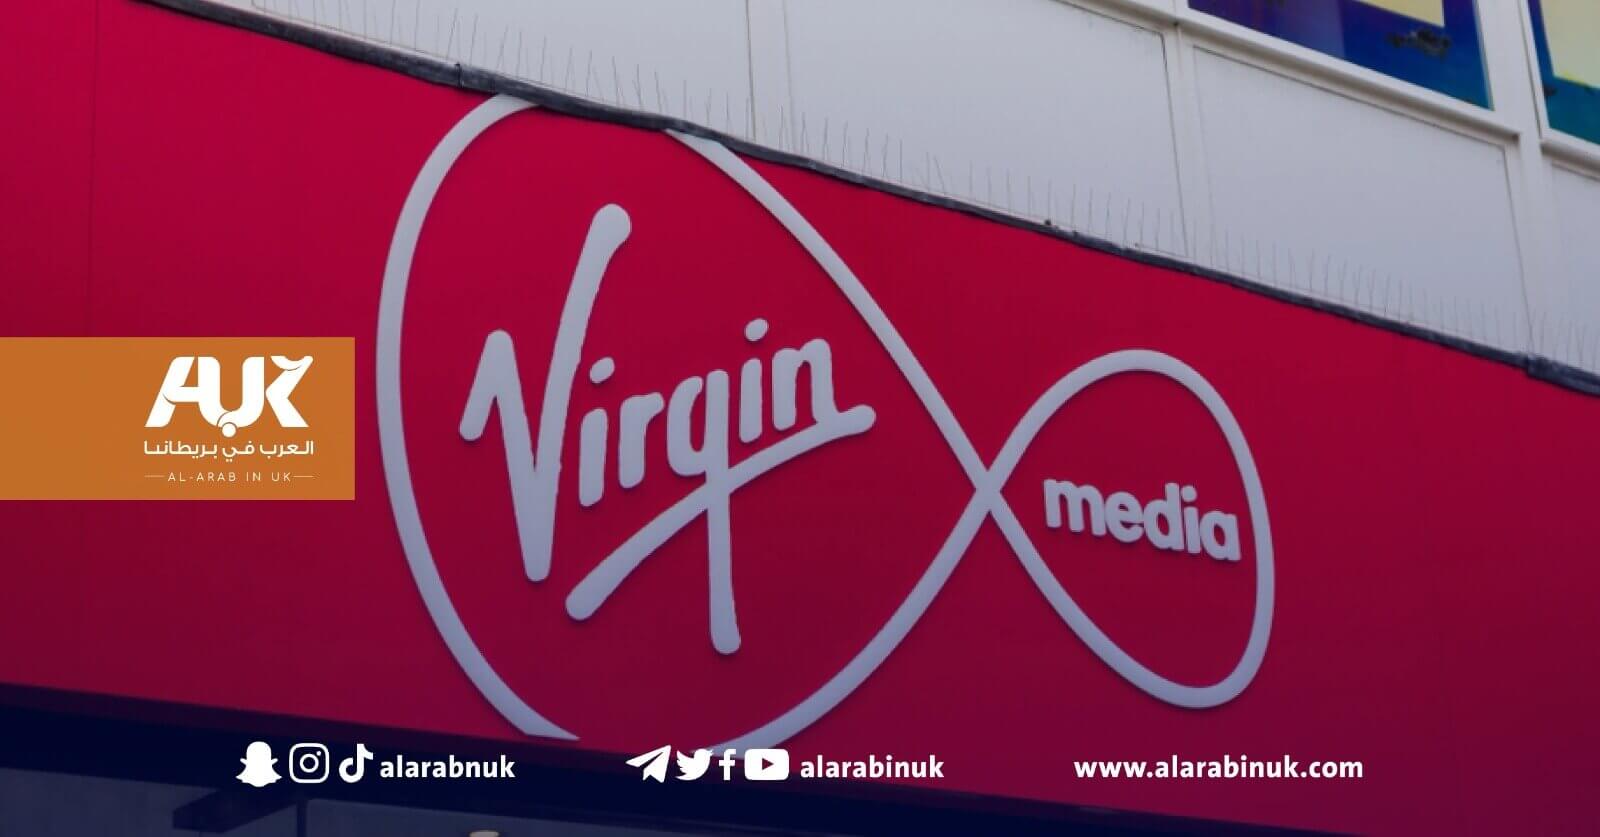 ارتفاع فواتير الاتصالات في شركة (Virgin)